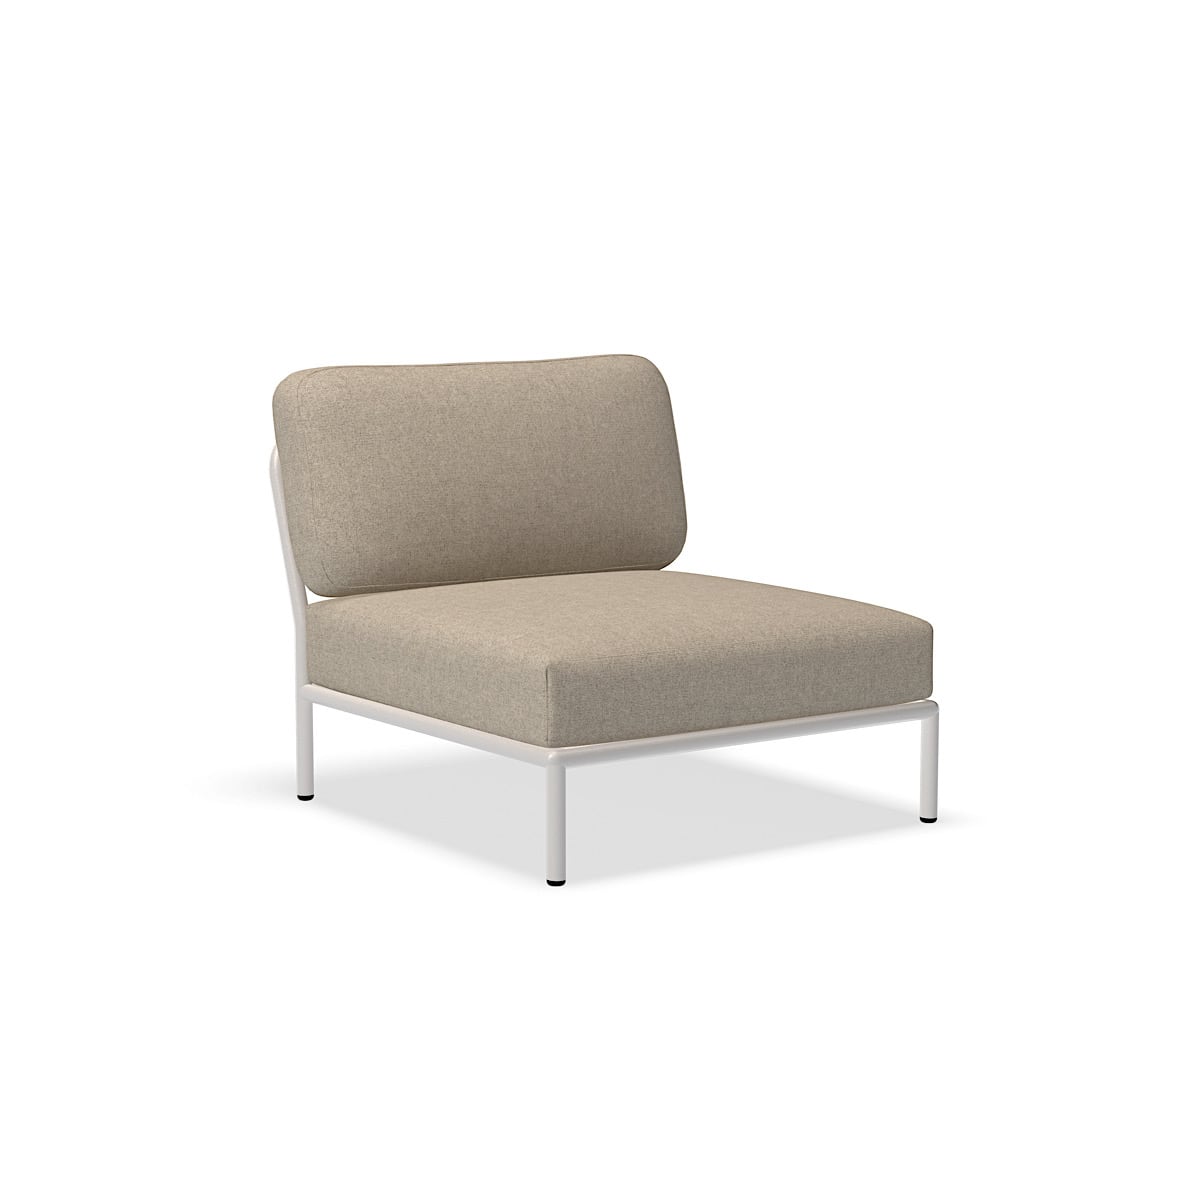 כיסא - 12205-9543 - כיסא, פפירוס (HERITAGE), מבנה לבן